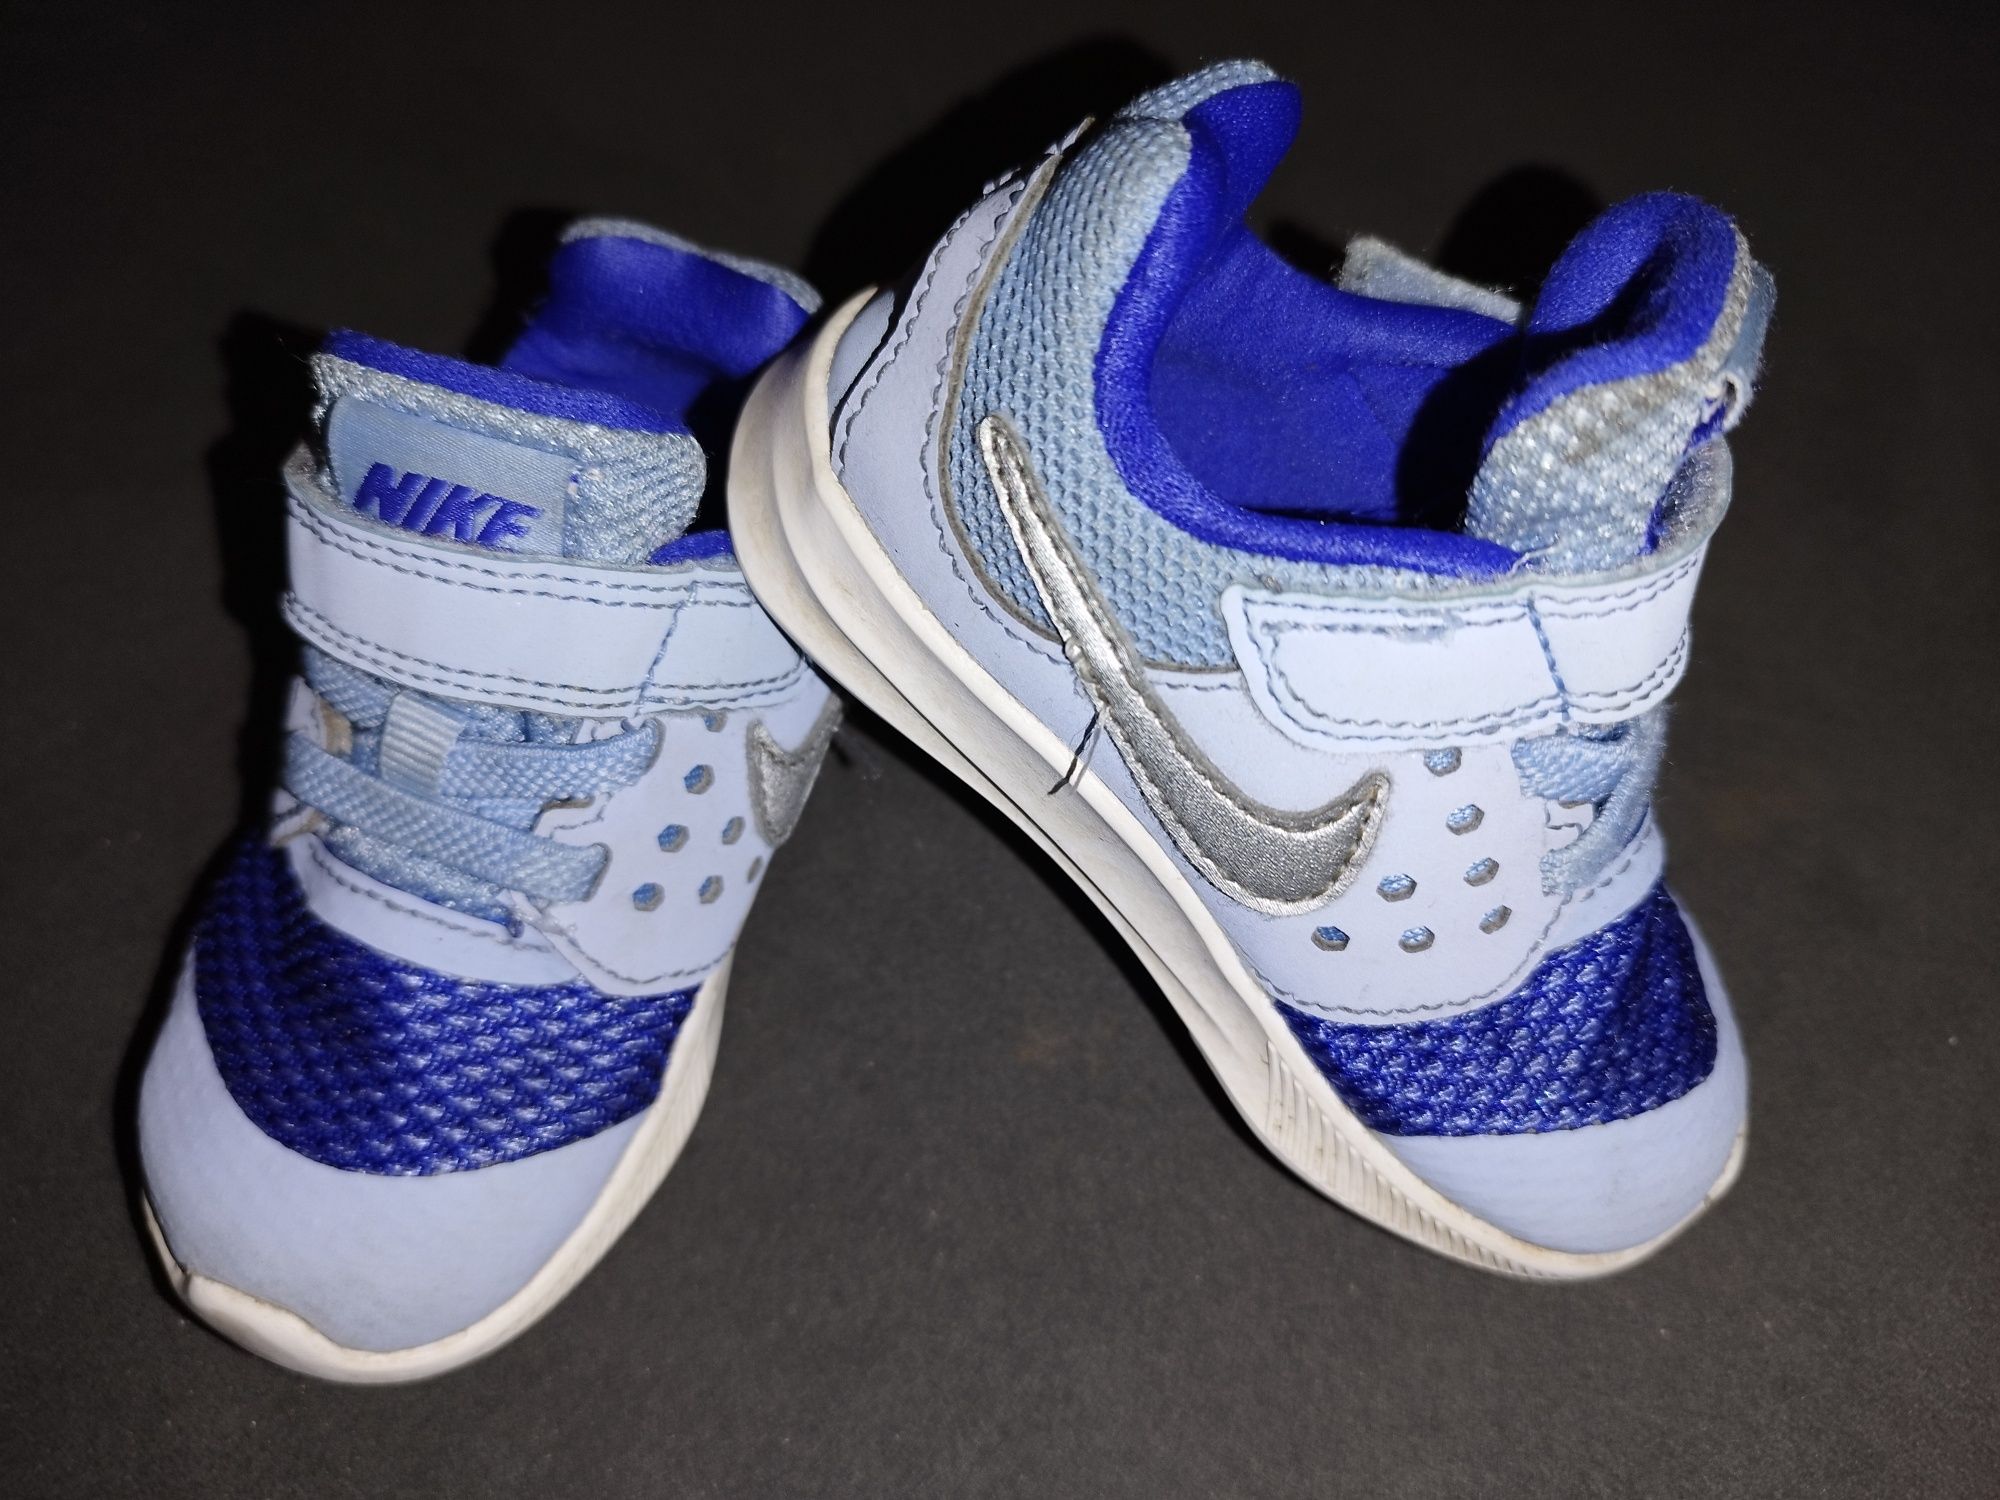 Buty Nike niebieskie rozmiar 21 pierwsze buciki do nauki chodzenia